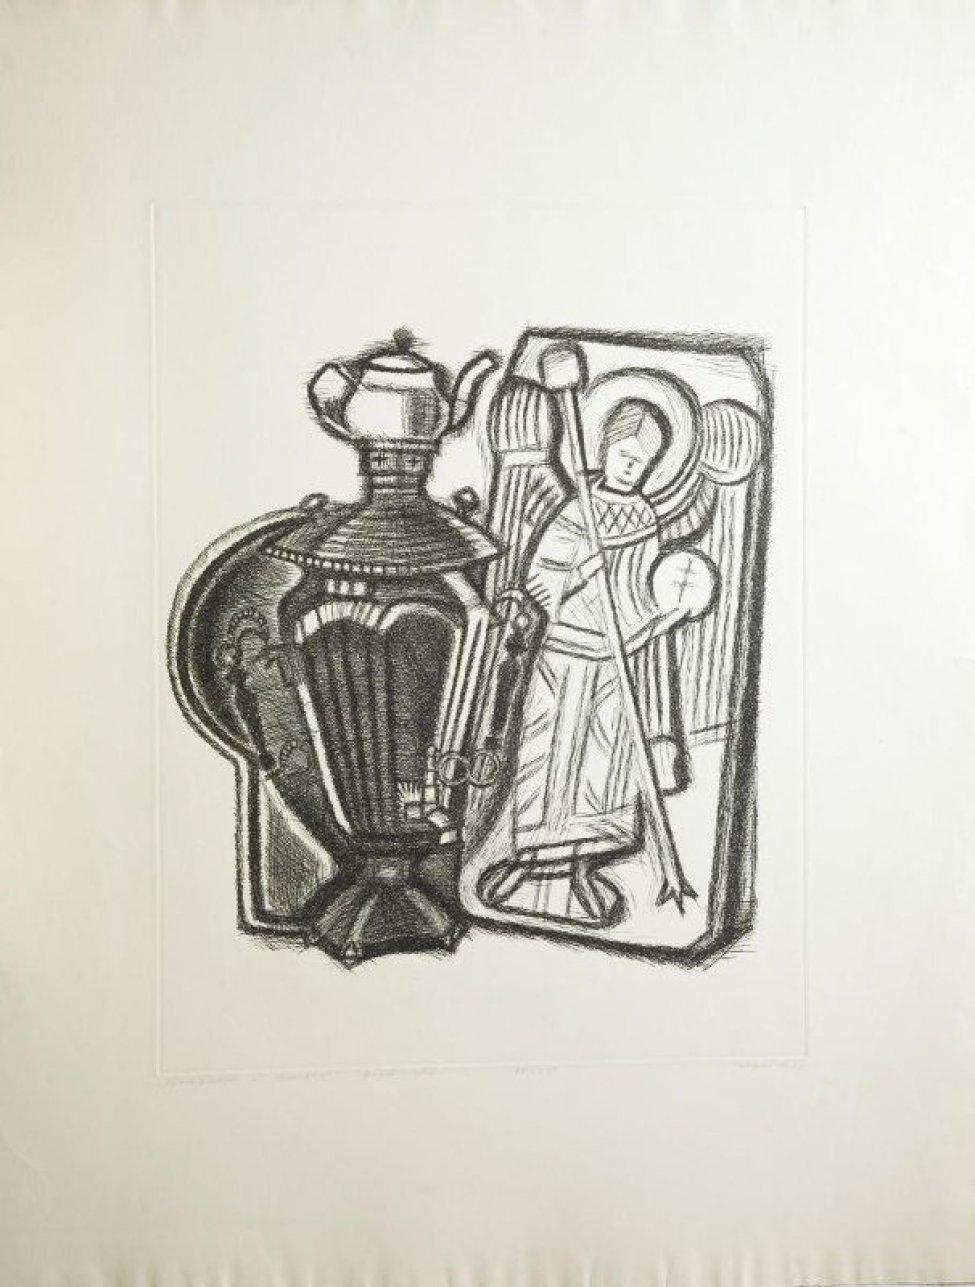 Изображен самовар со стоящим на нем чайником для заварки. За самоваром поднос. Справа от самовара - рельеф с изображением ангела.